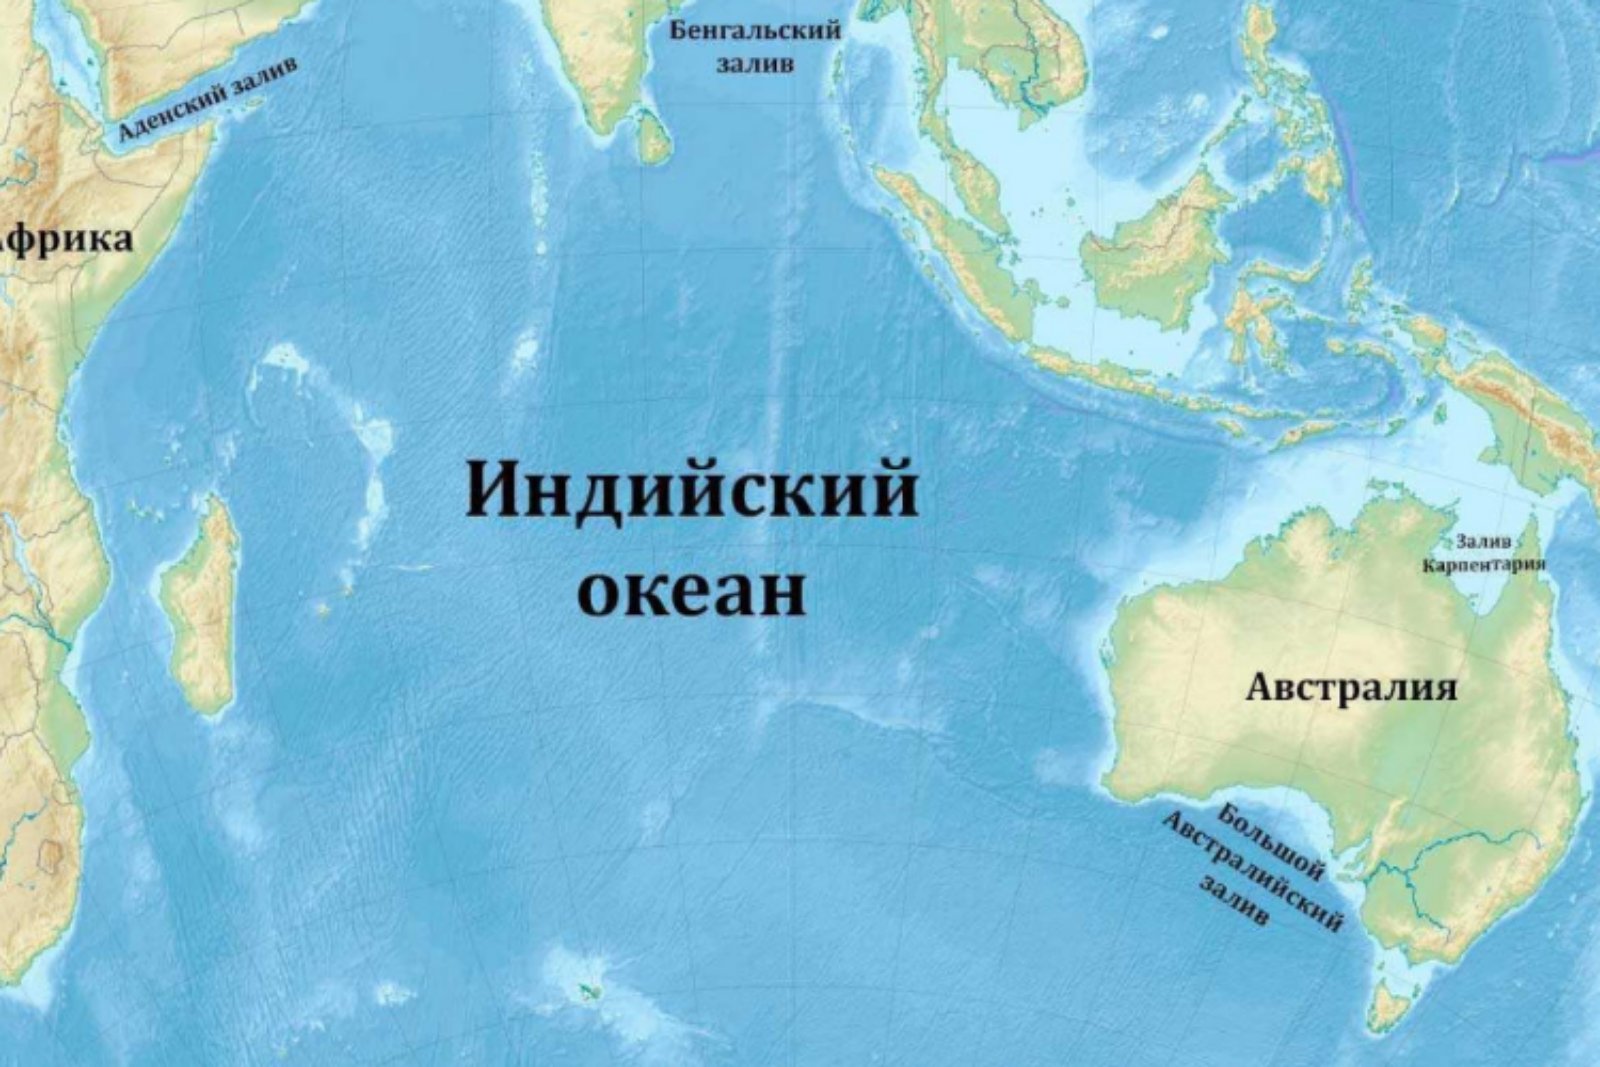 Материк омывается индийским океаном. Оманский залив на карте индийского океана. Заливы и проливы индийского океана на карте. Карта индийского океана с морями заливами и проливами. Индийский океан на карте.